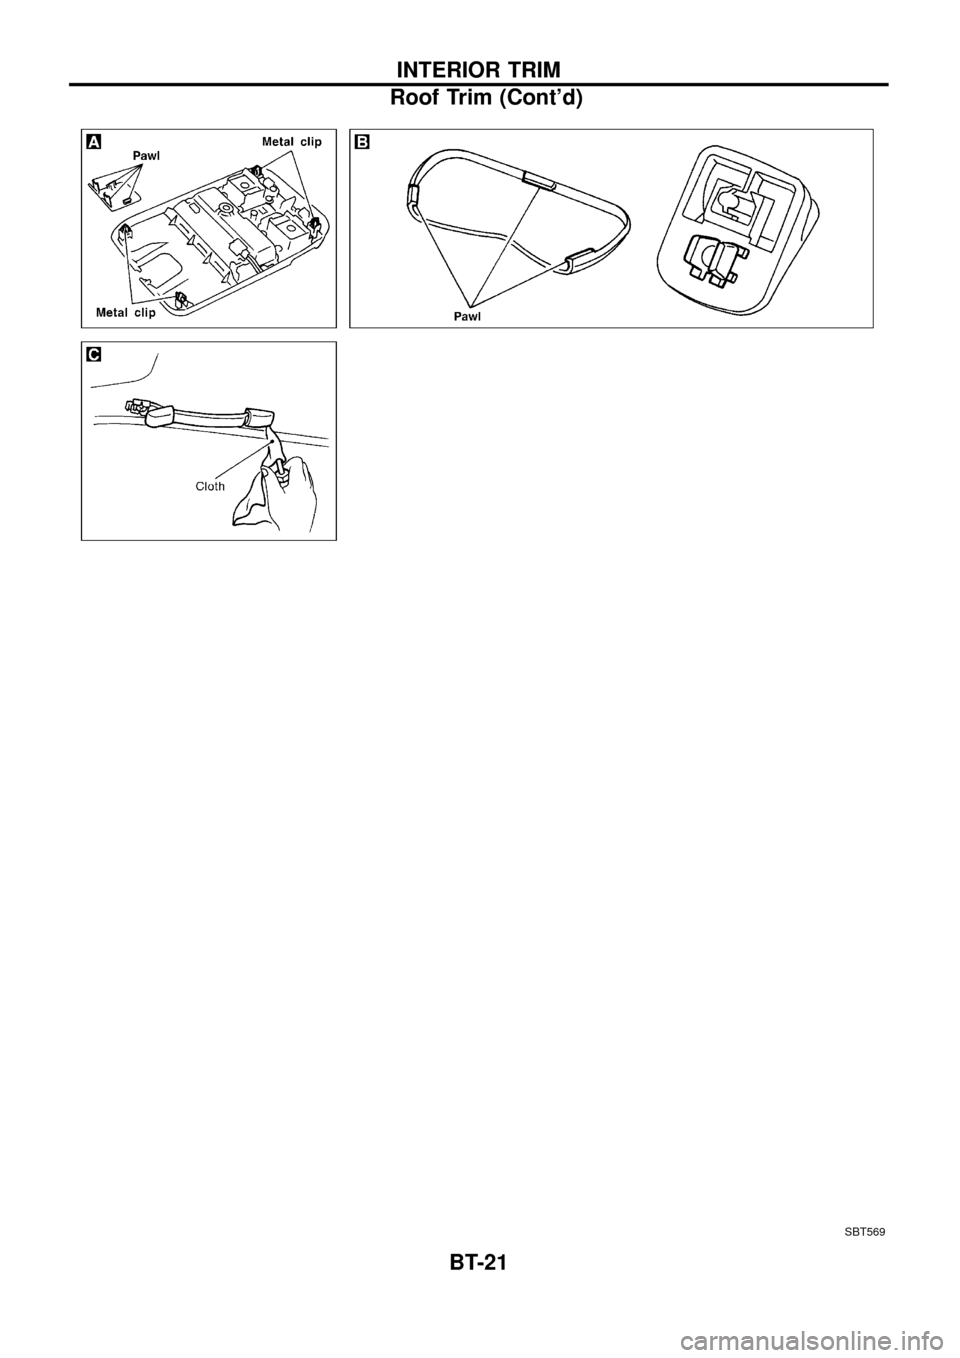 NISSAN PATROL 1998 Y61 / 5.G Body Workshop Manual SBT569
INTERIOR TRIM
Roof Trim (Contd)
BT-21 